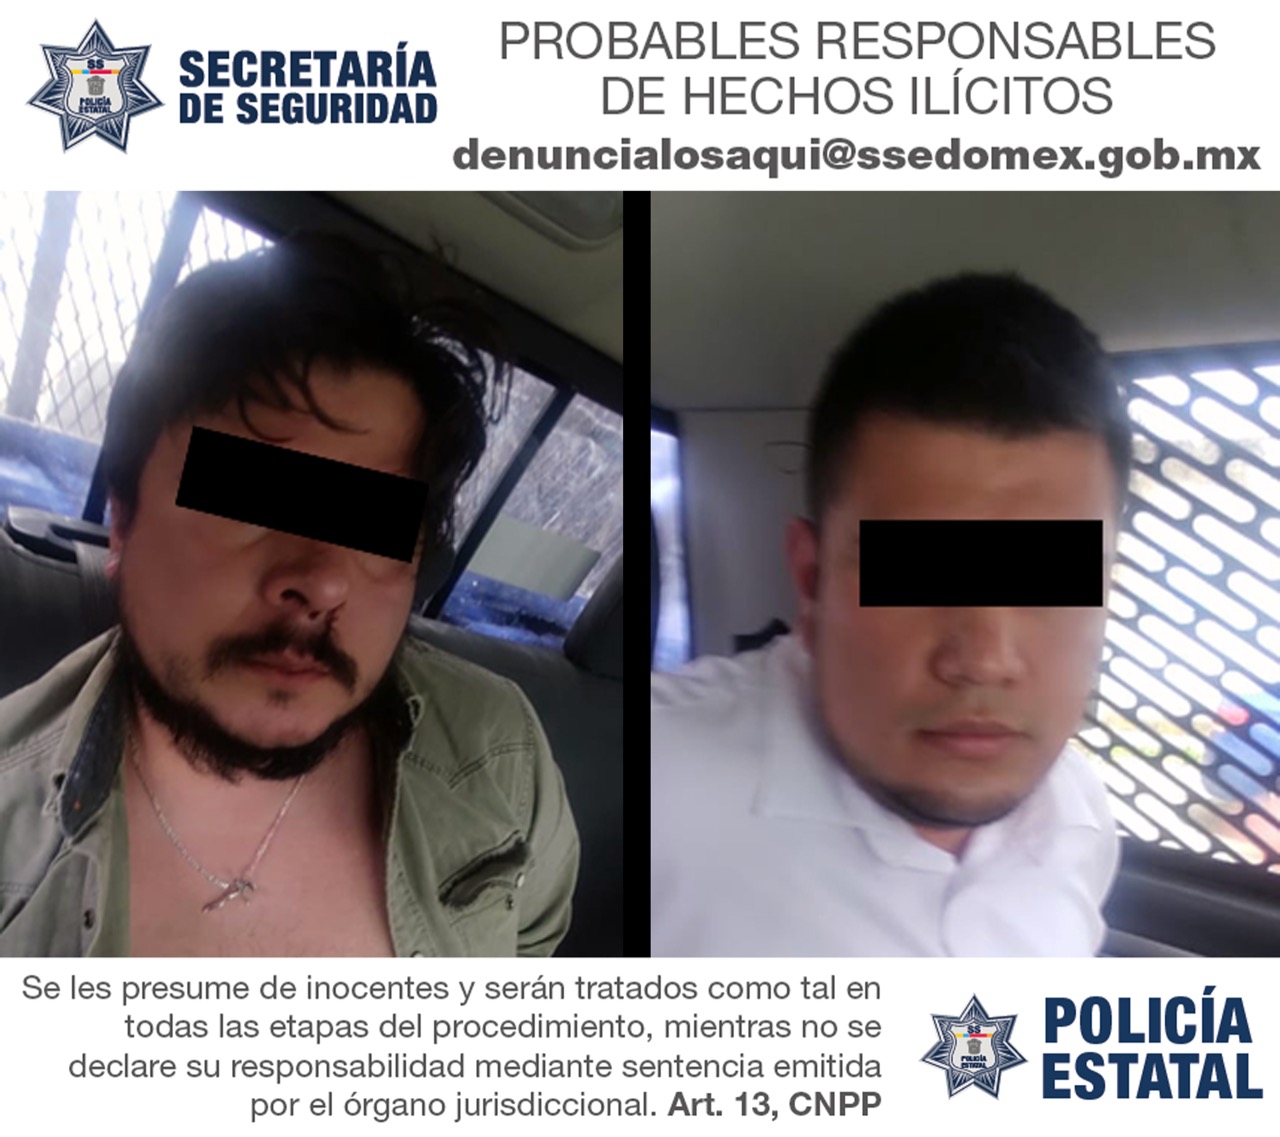 Secretaría de seguridad detiene a dos hombres posiblemente implicados en los delitos de extorsión y uso indebido de insignias